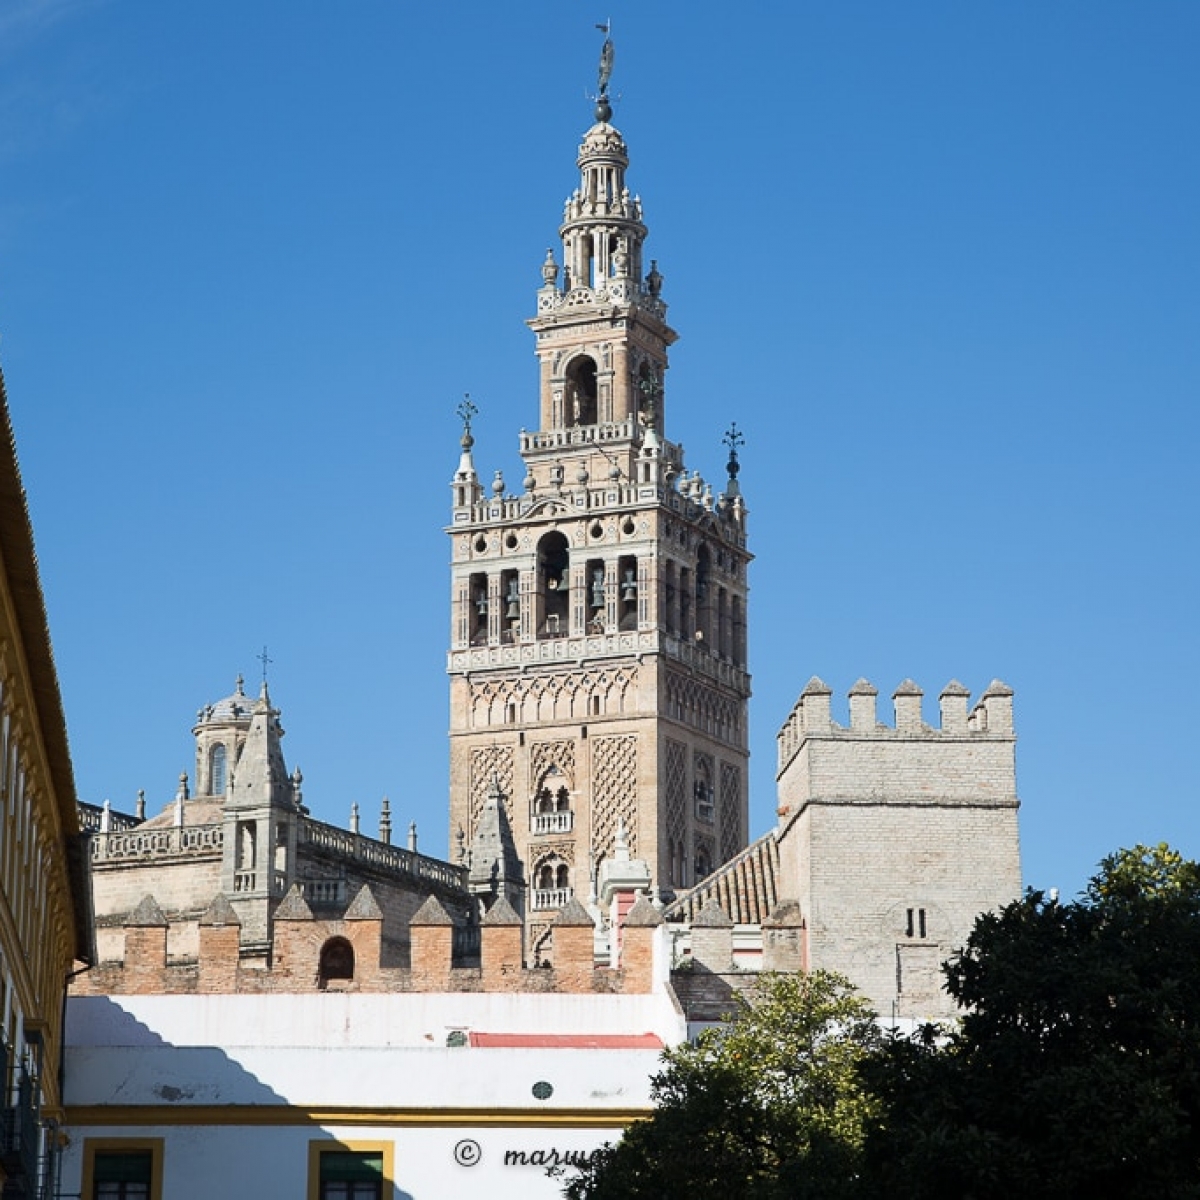 Séville (en espagnol : Sevilla) est une ville du Sud de l'Espagne, capitale de la province de Séville et de la communauté autonome d'Andalousie @Marwan Moussa